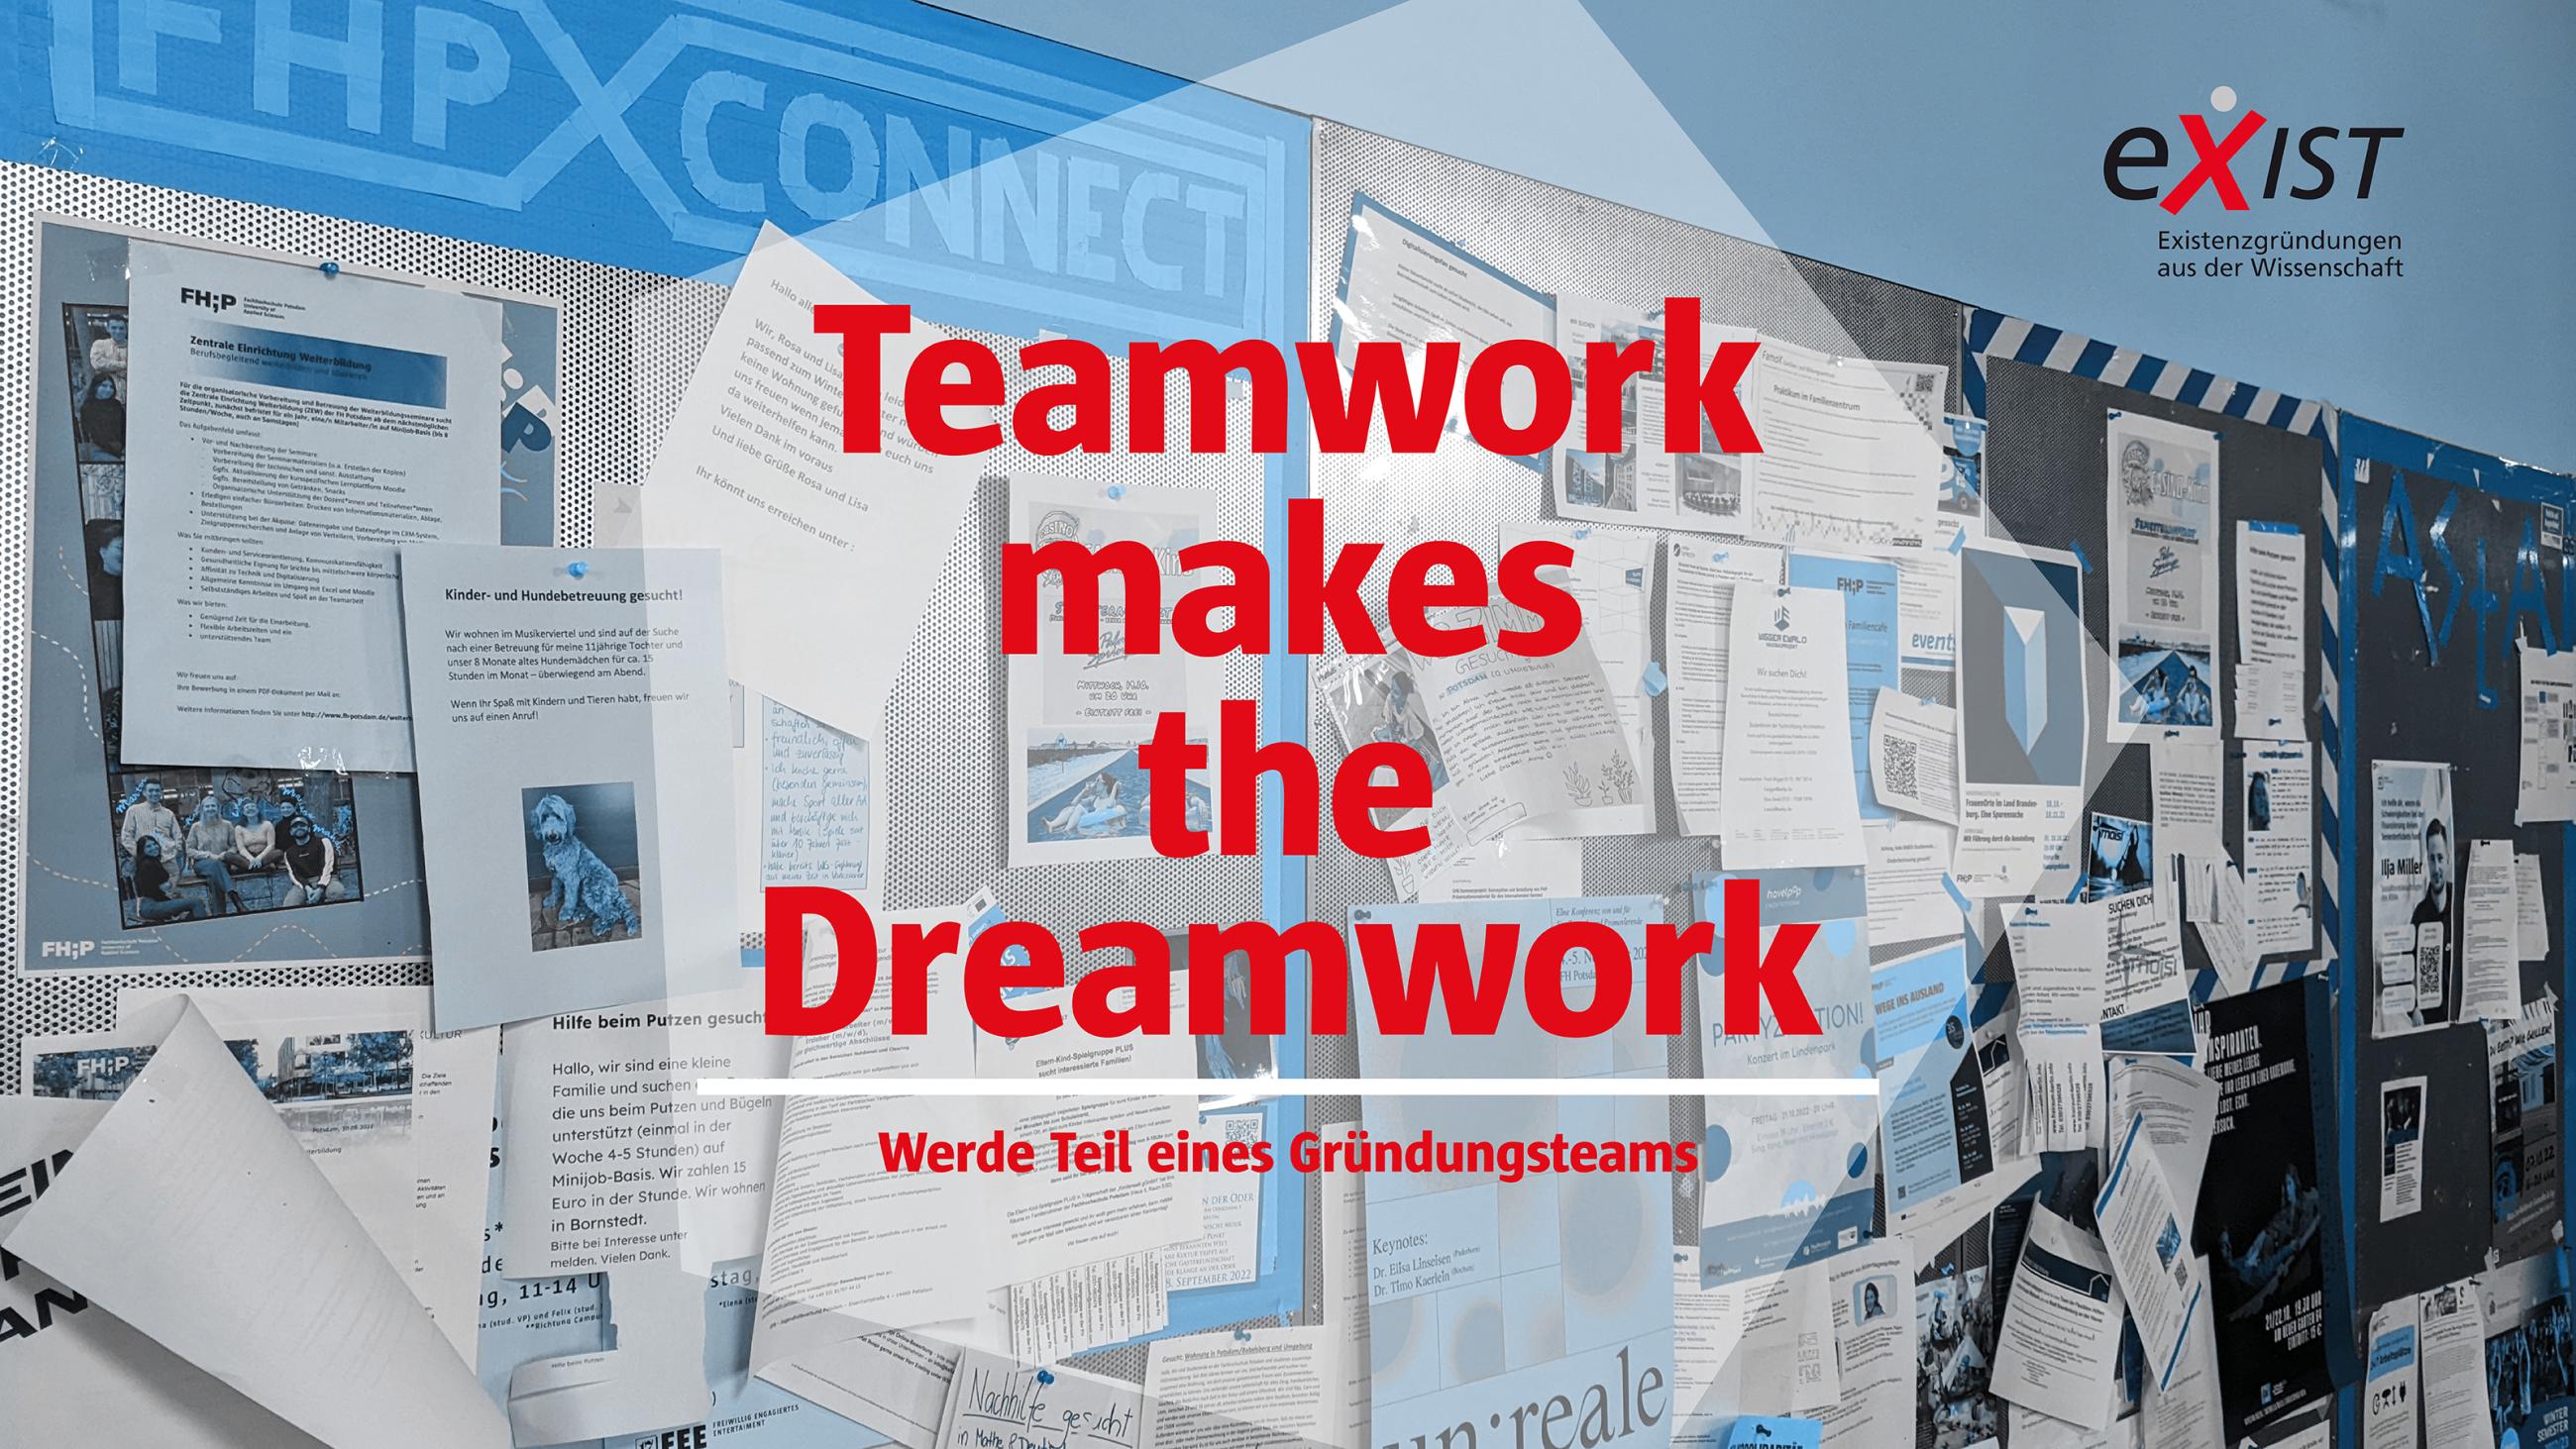 Schwarzes Brett der Mensa im Hintergrund mit der roten Aufschrift "Teamwork makes the Dreamwork – Werde Teil eines Gründungsteams"